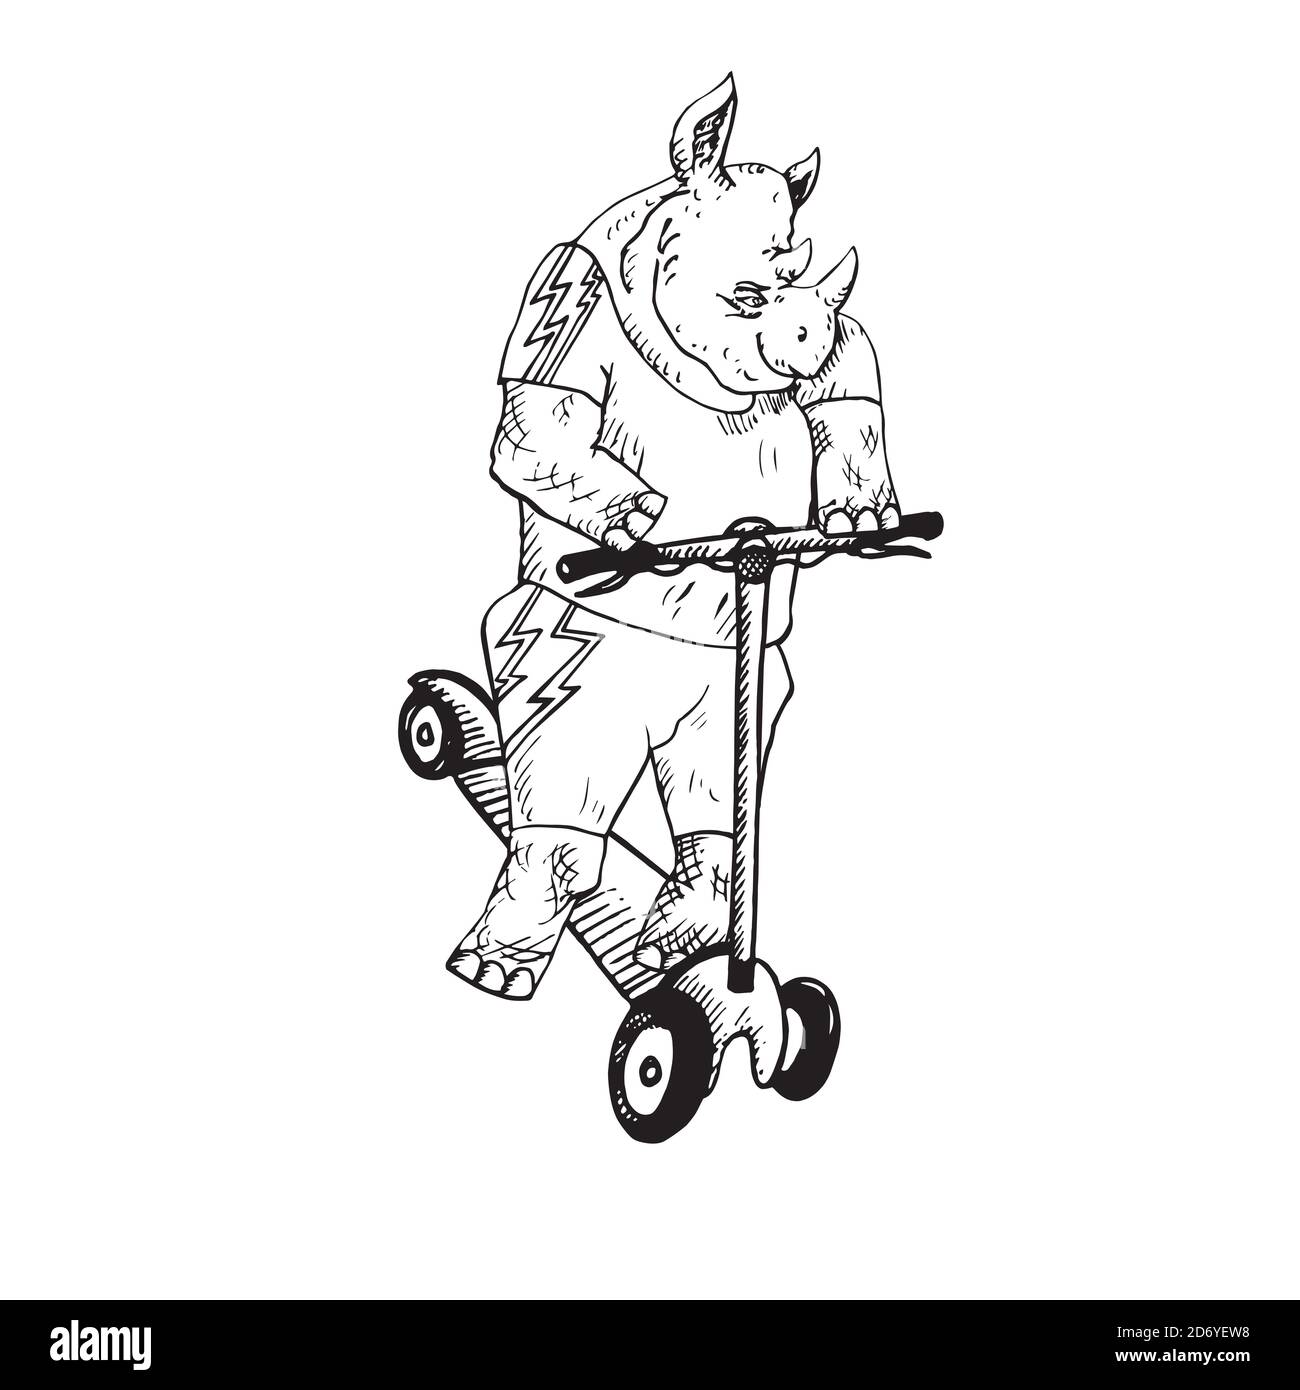 Rhino personaggio in abbigliamento elegante su scooter da calcio, doodle disegnate a mano, schizzo, illustrazione del contorno in bianco e nero Foto Stock